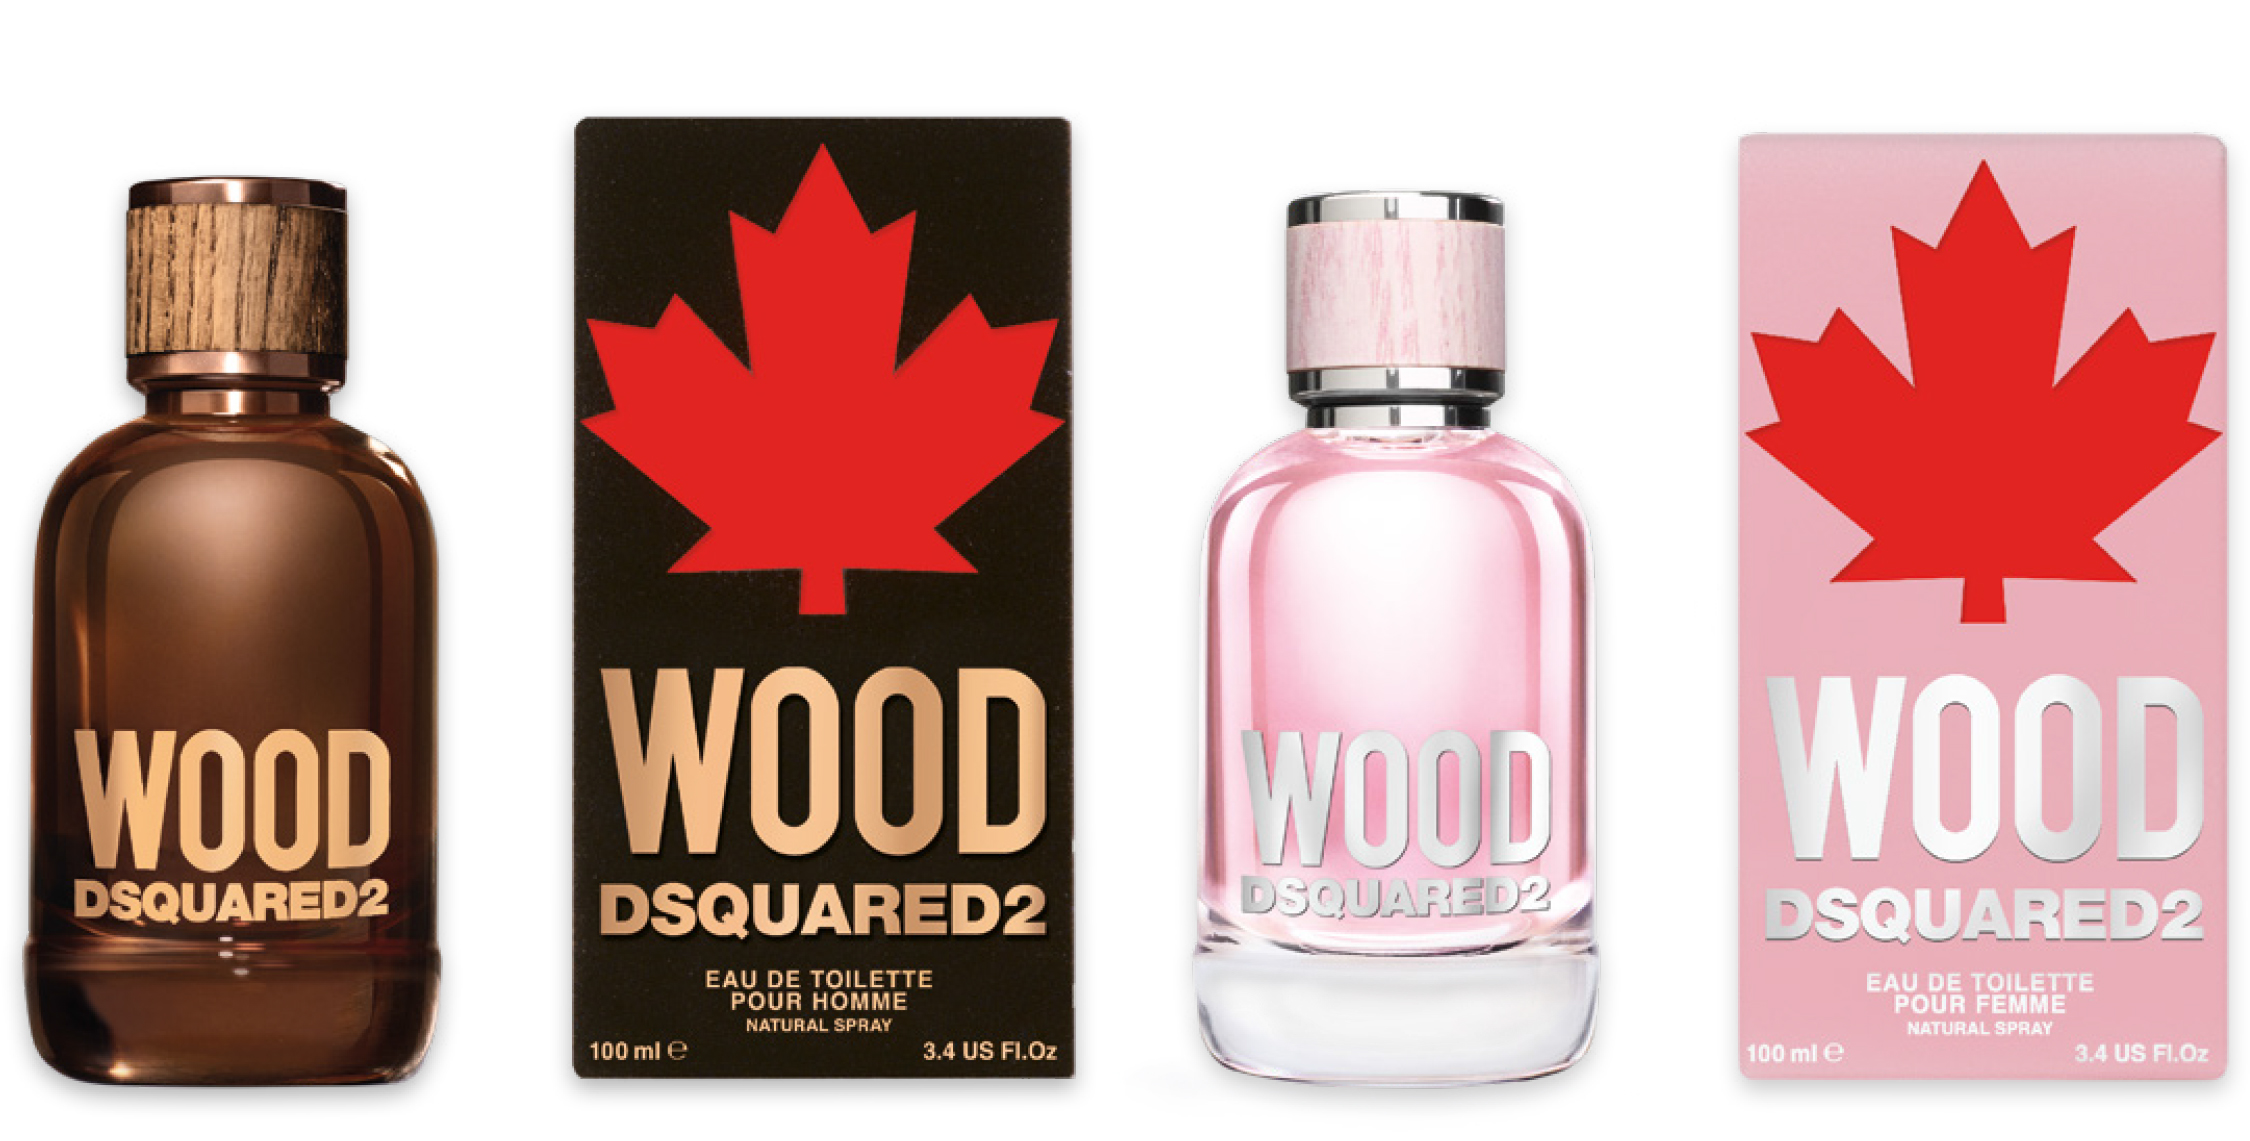 wood dsquared2 new